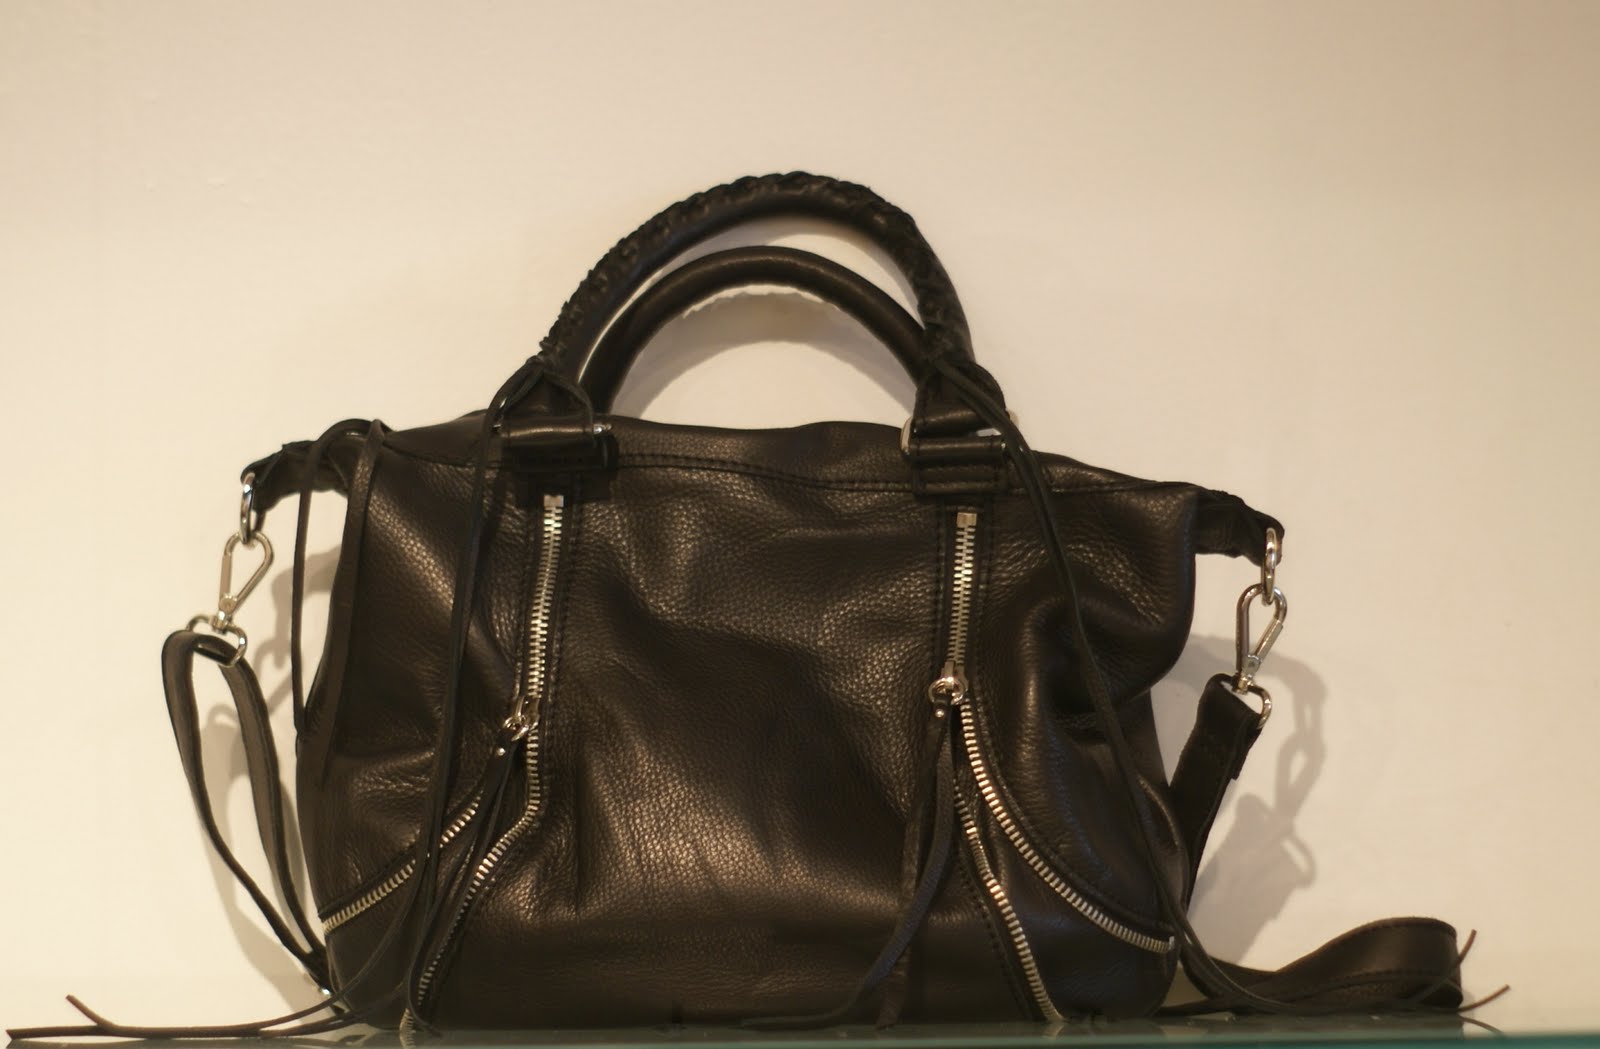 Deliciouz: New Linea Pelle Handbags!!!